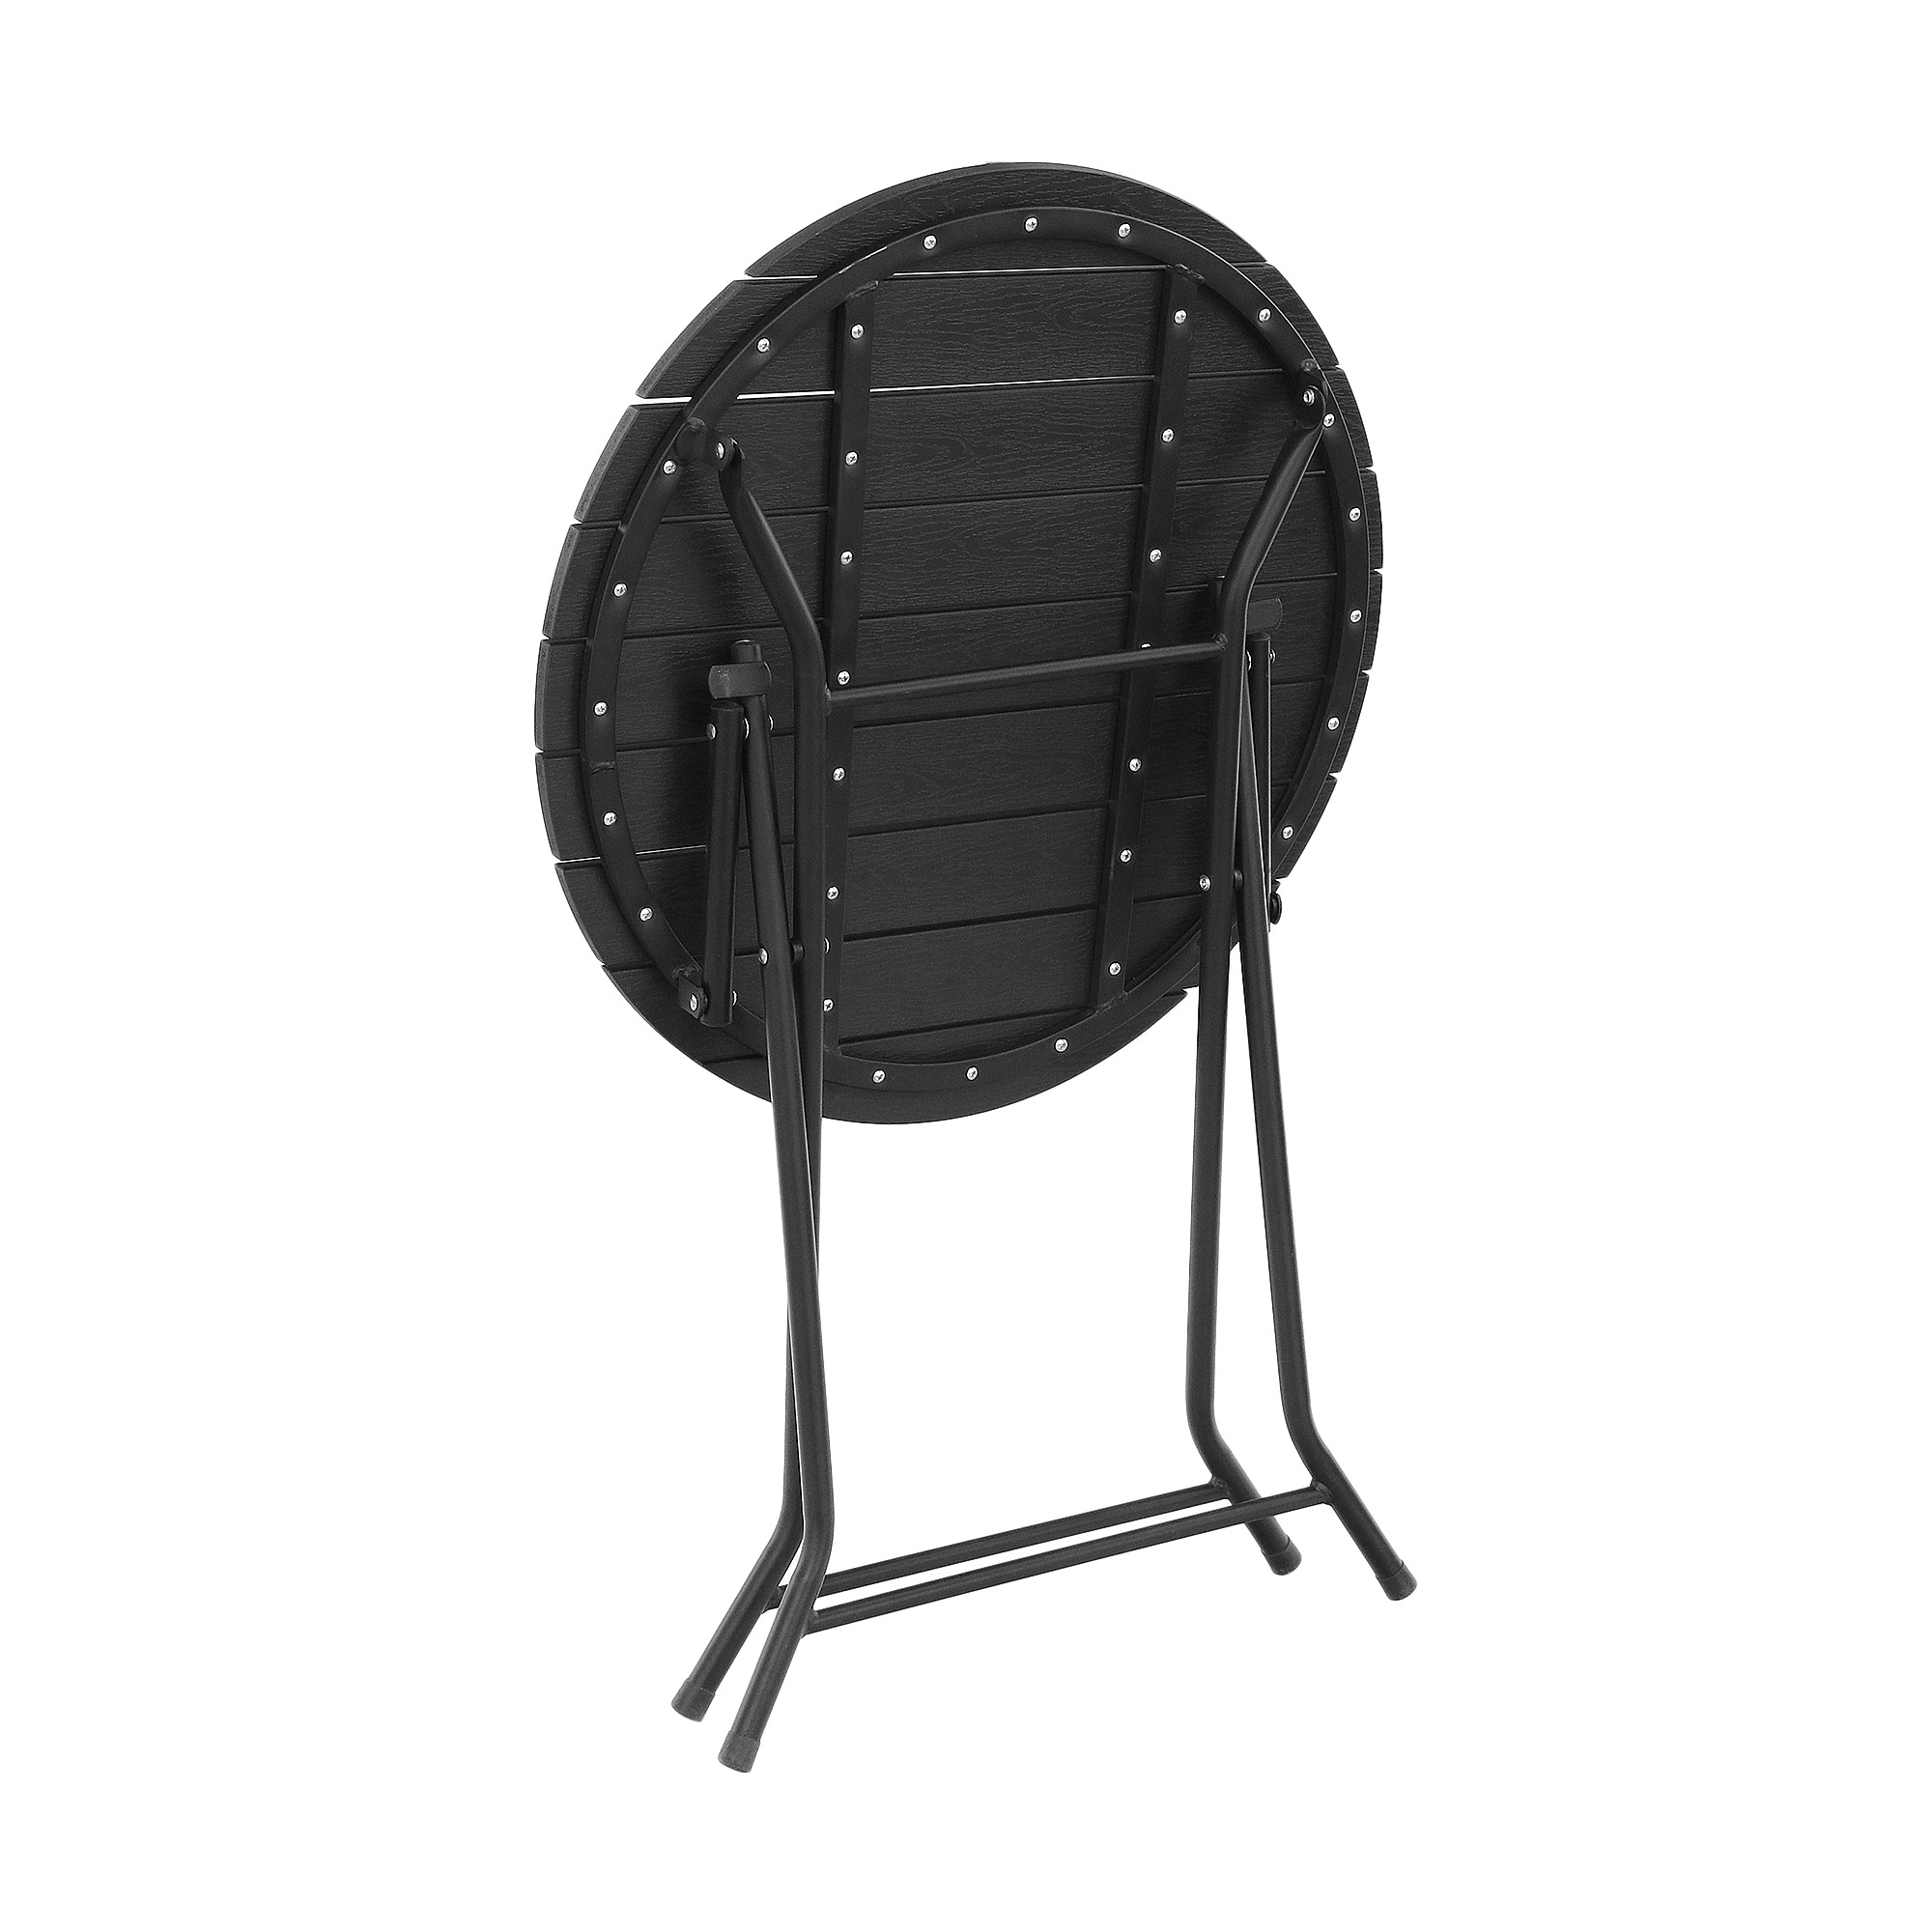 Набор садовой мебели Koopman furniture стол+2 стула, цвет черный, размер 60х60x70 см - фото 5